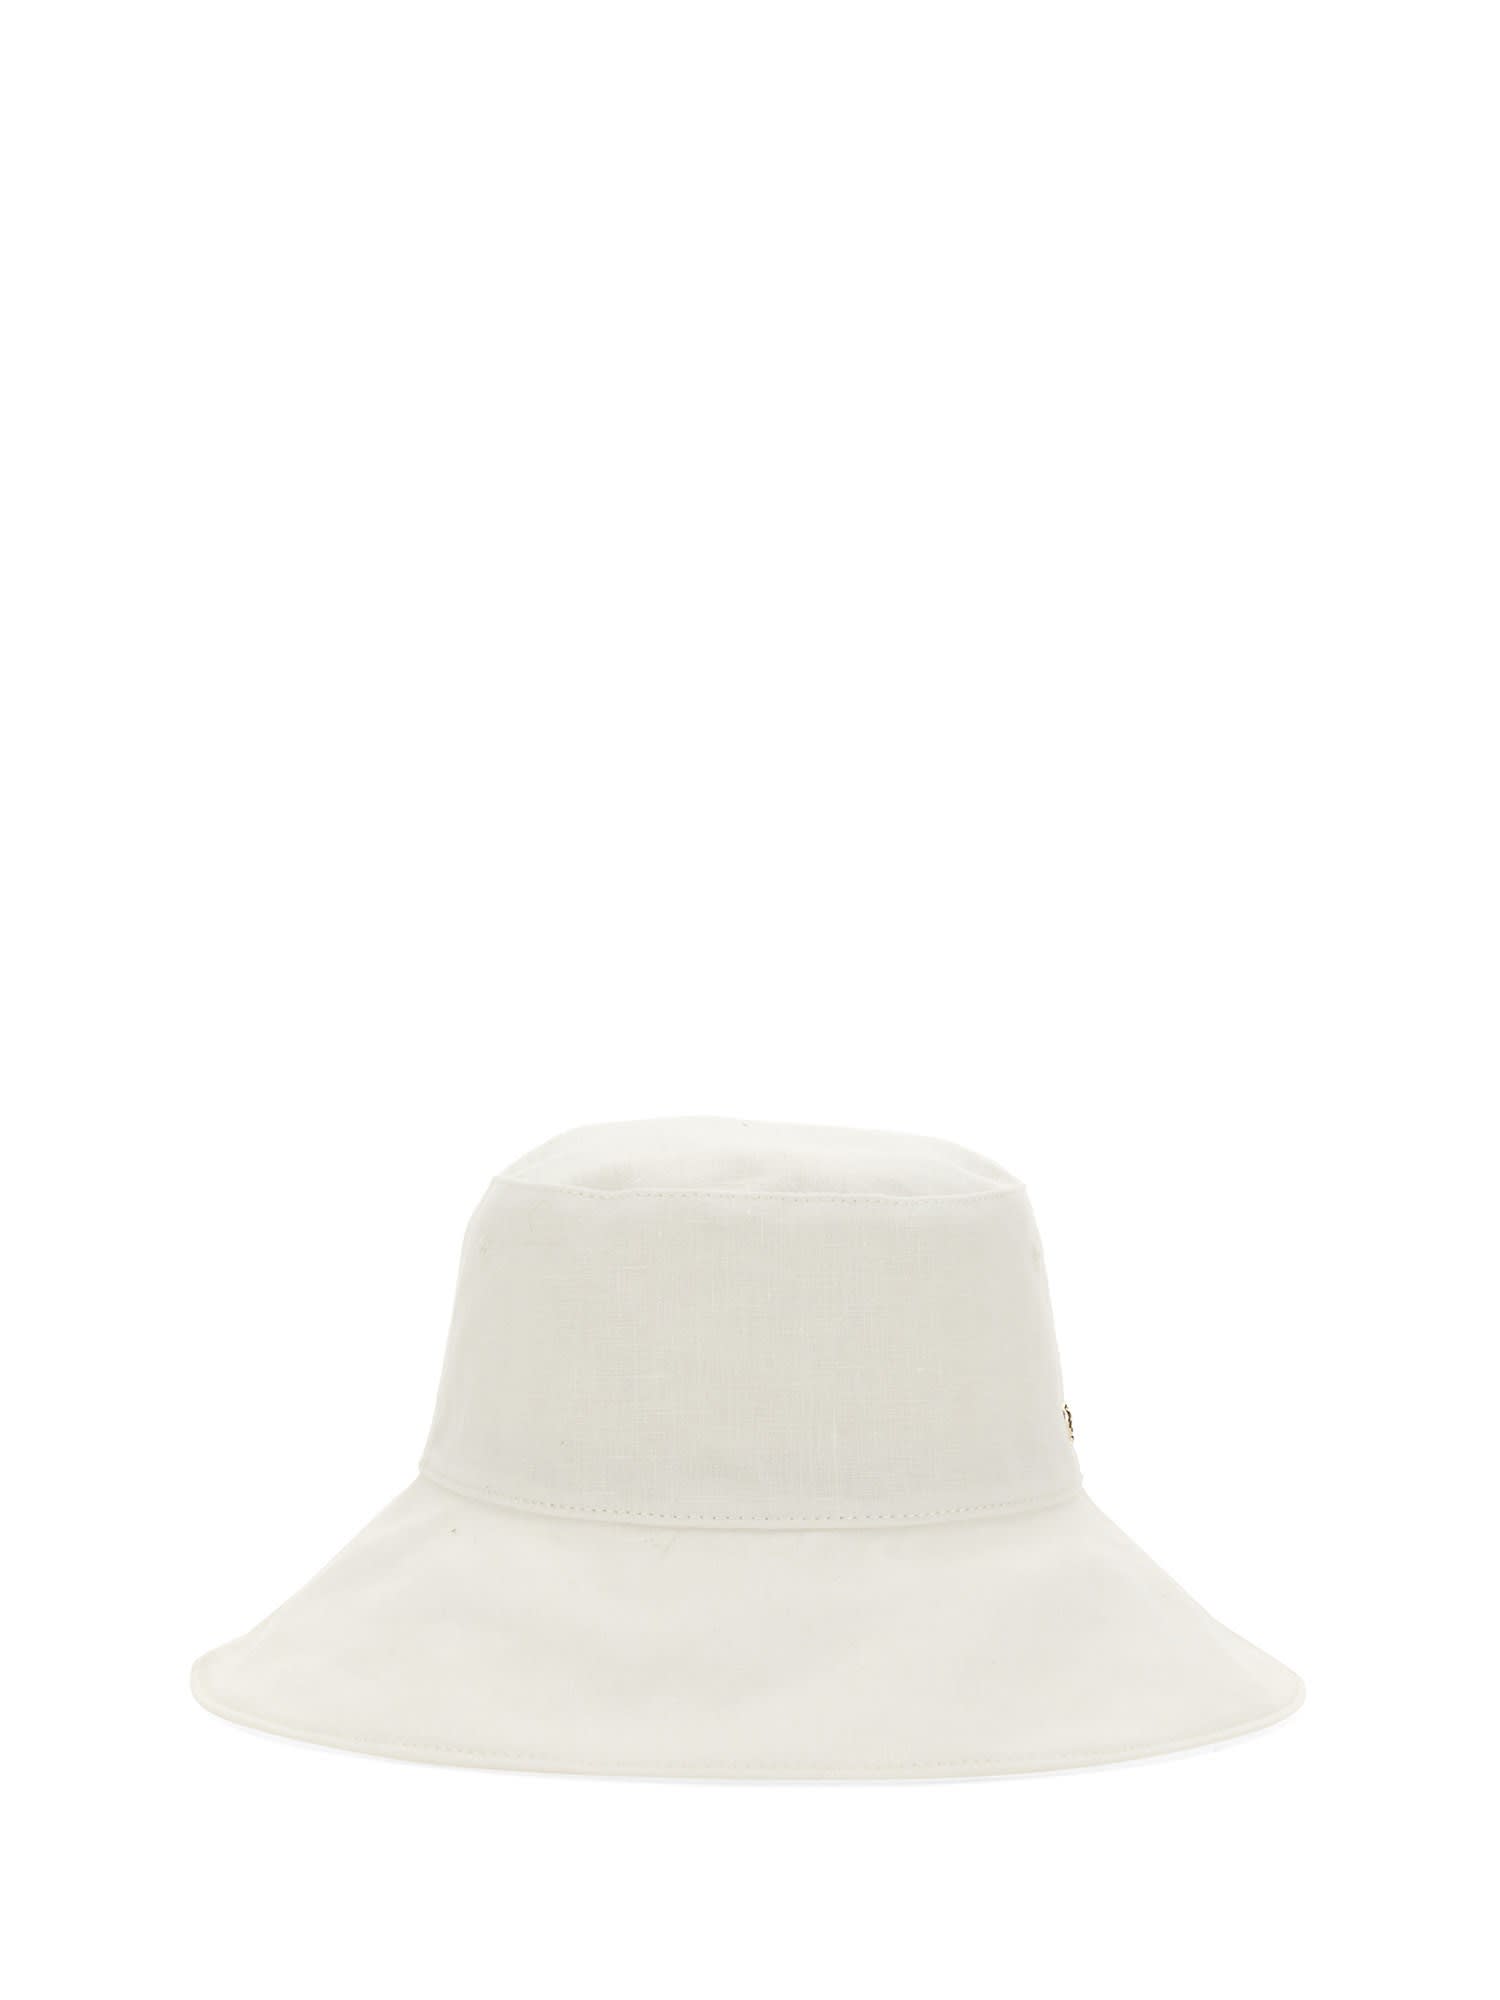 Helen Kaminski Daintree Bucket Hat